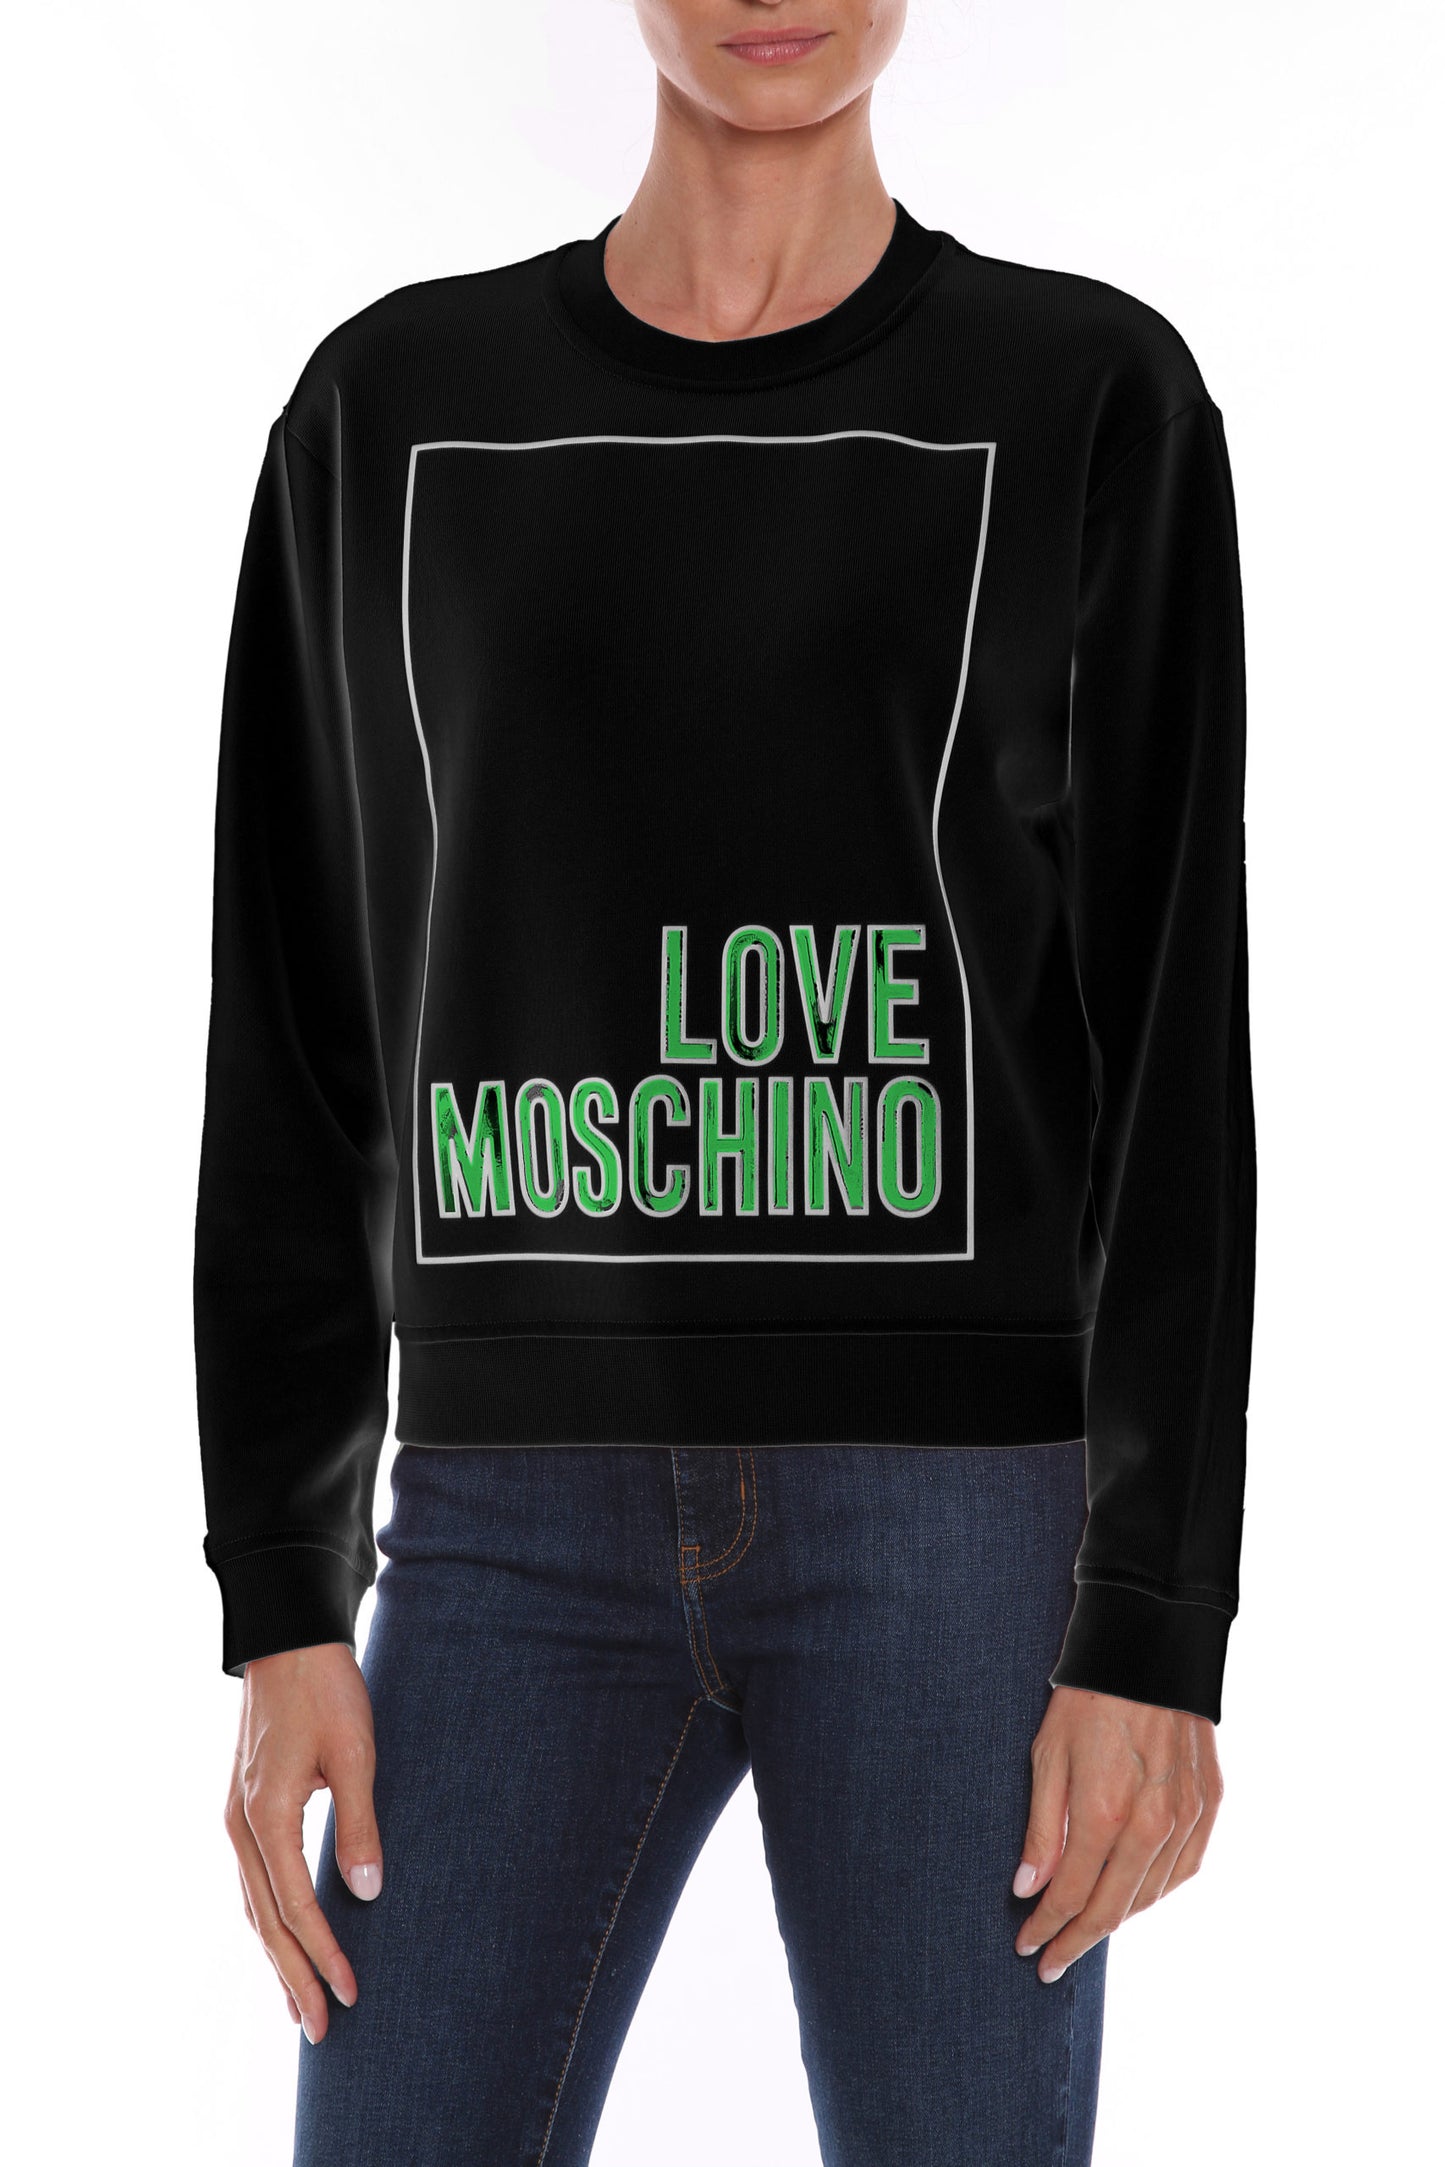 Love Moschino Black Cotton Sweater - DEA STILOSA MILANO